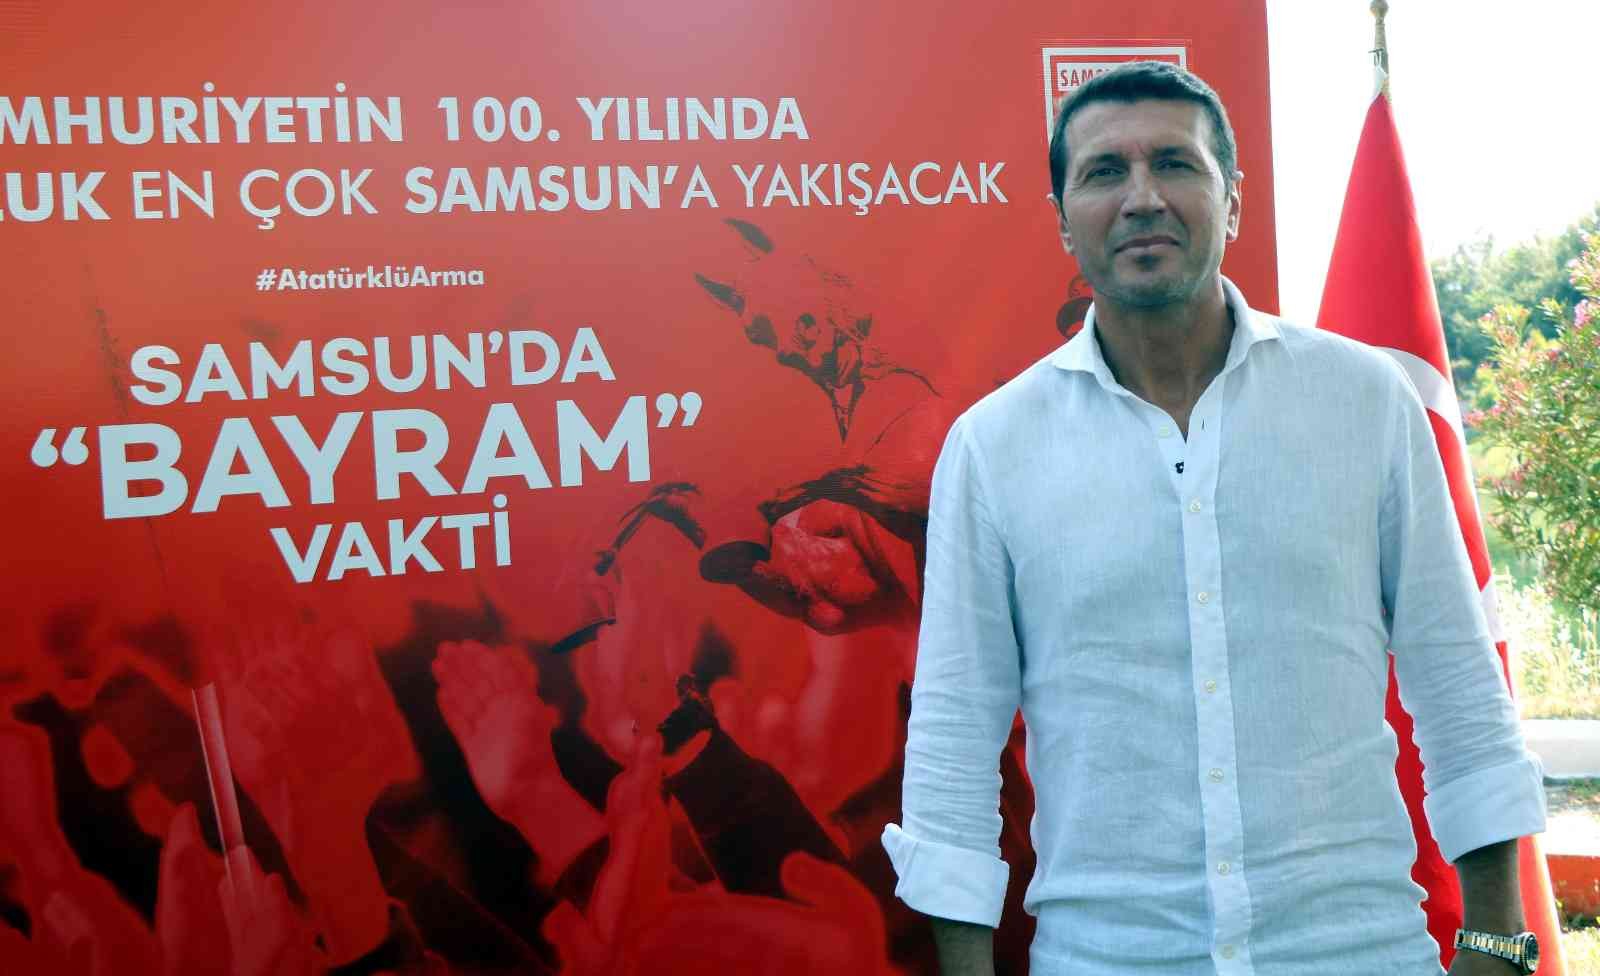 Samsunspor'da Bayram Bektaş dönemi başladı
